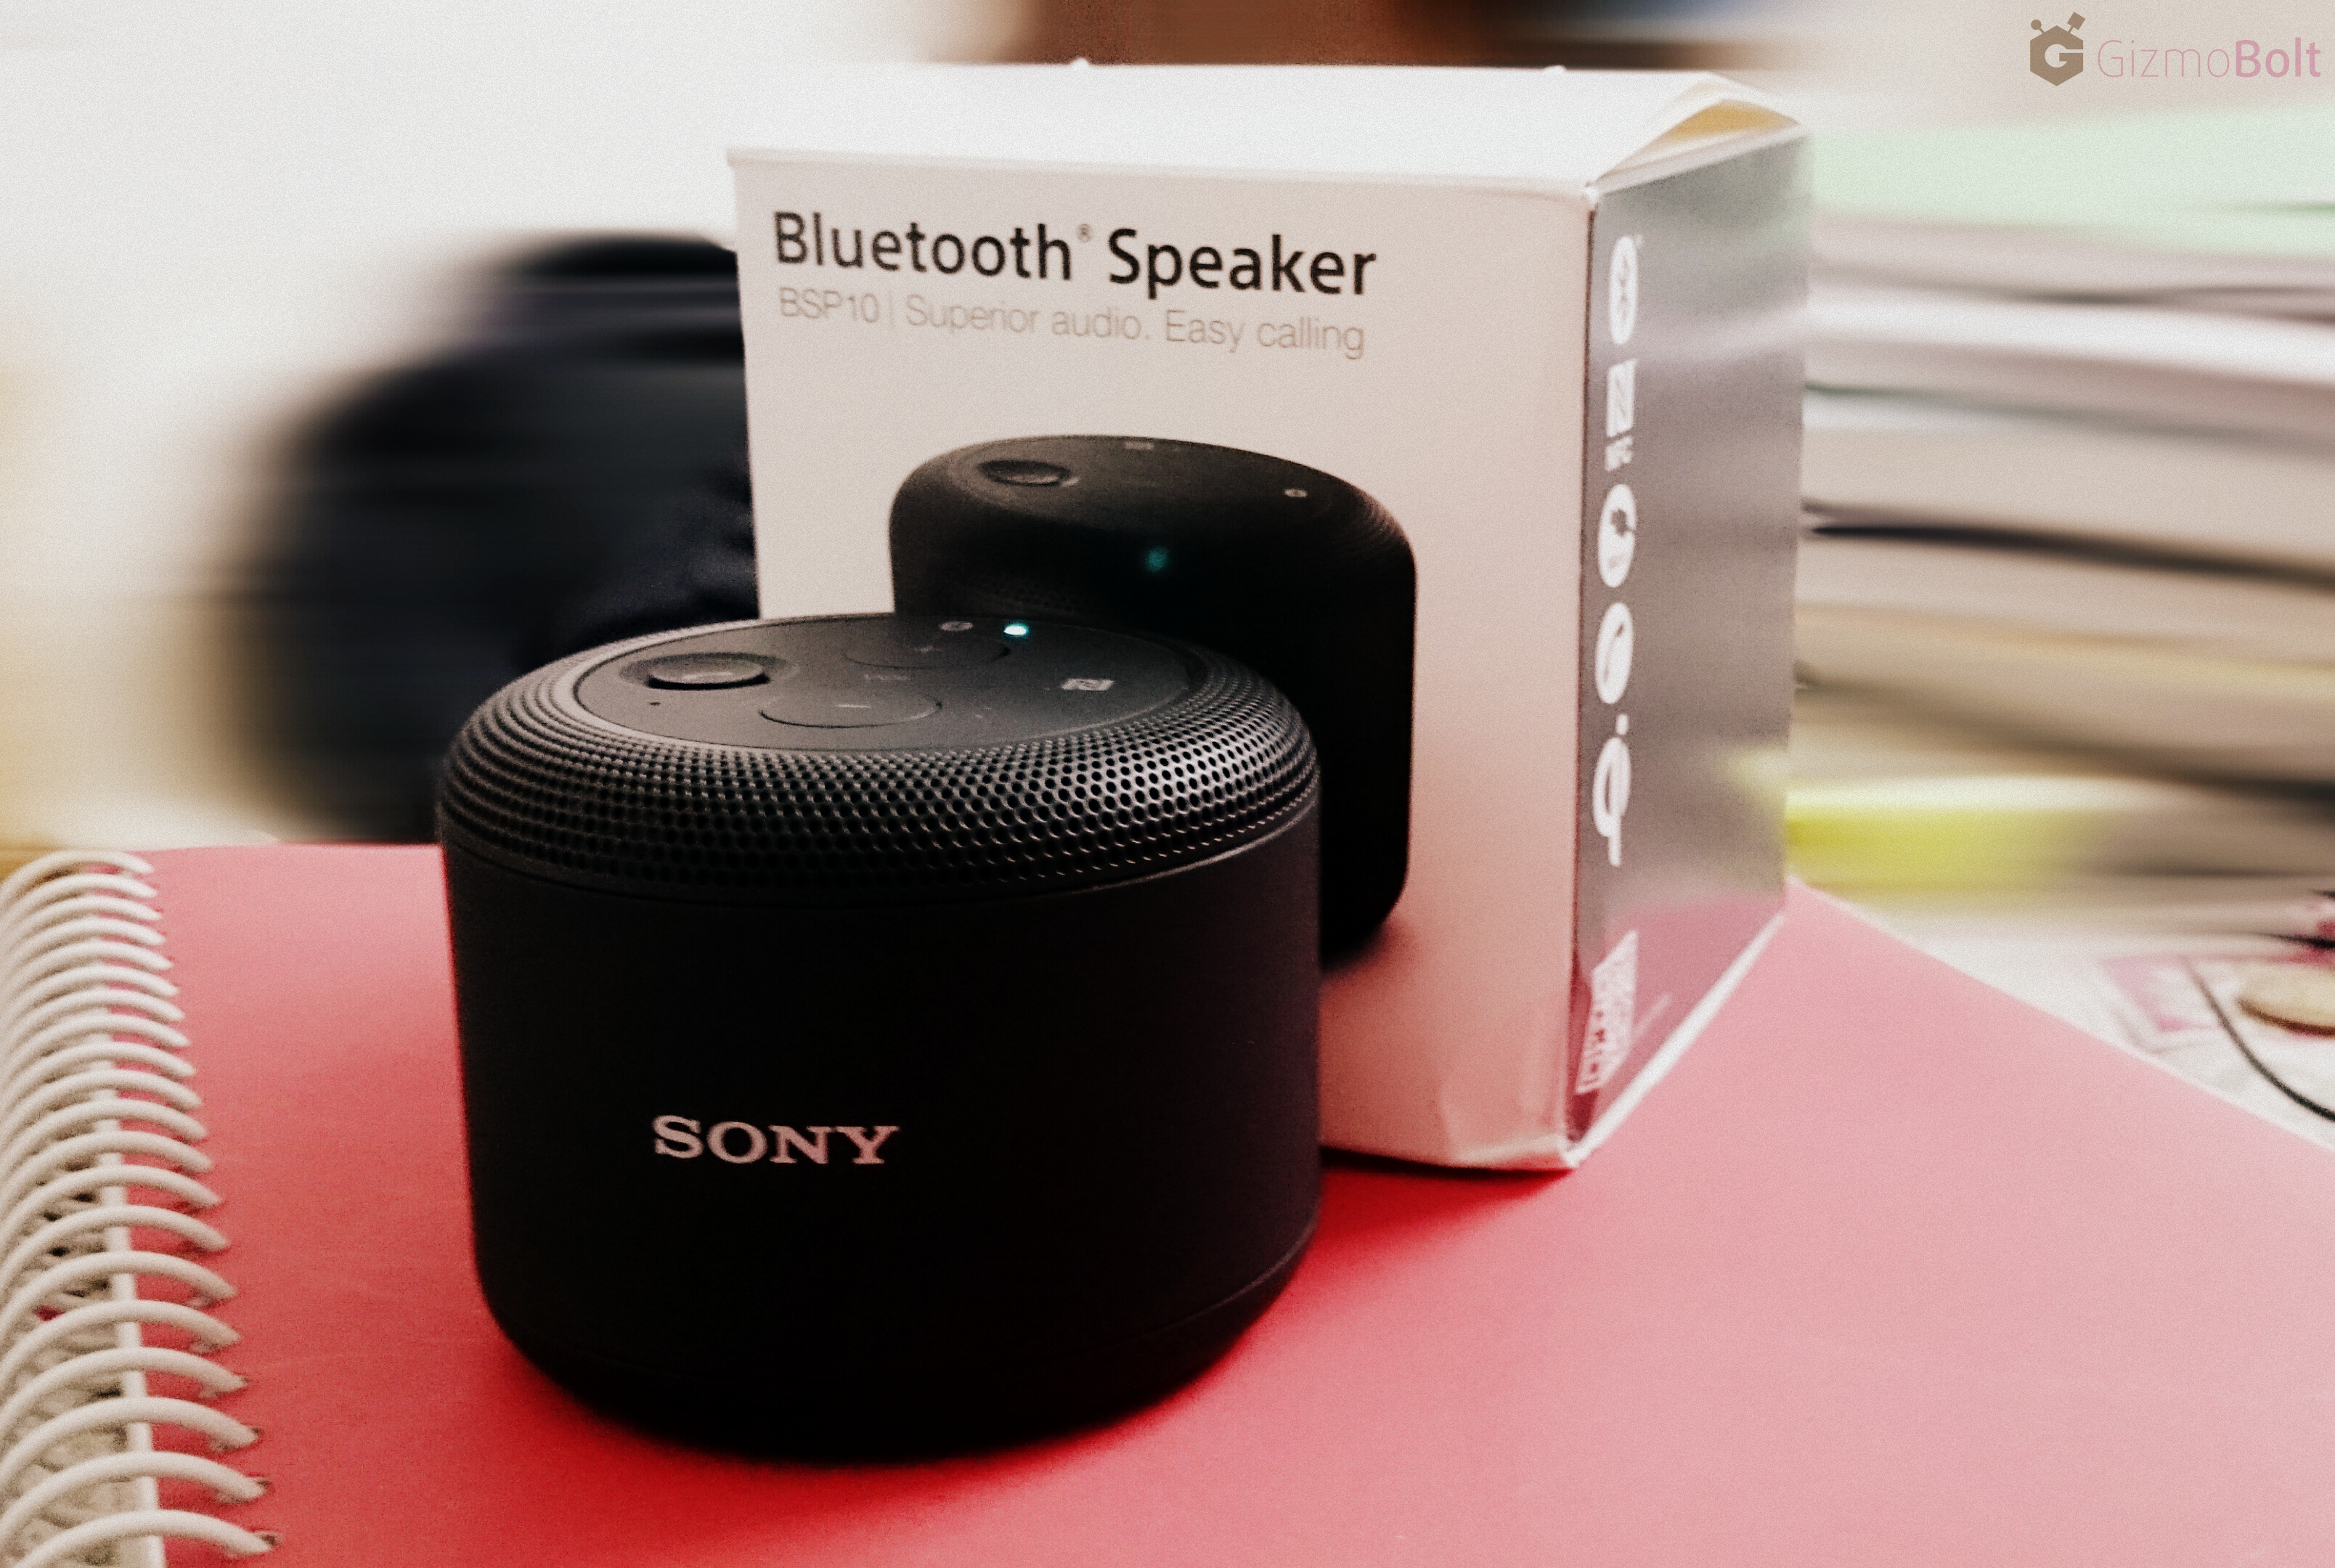 Sony Bluetooth Speaker BSP10 for Christmas